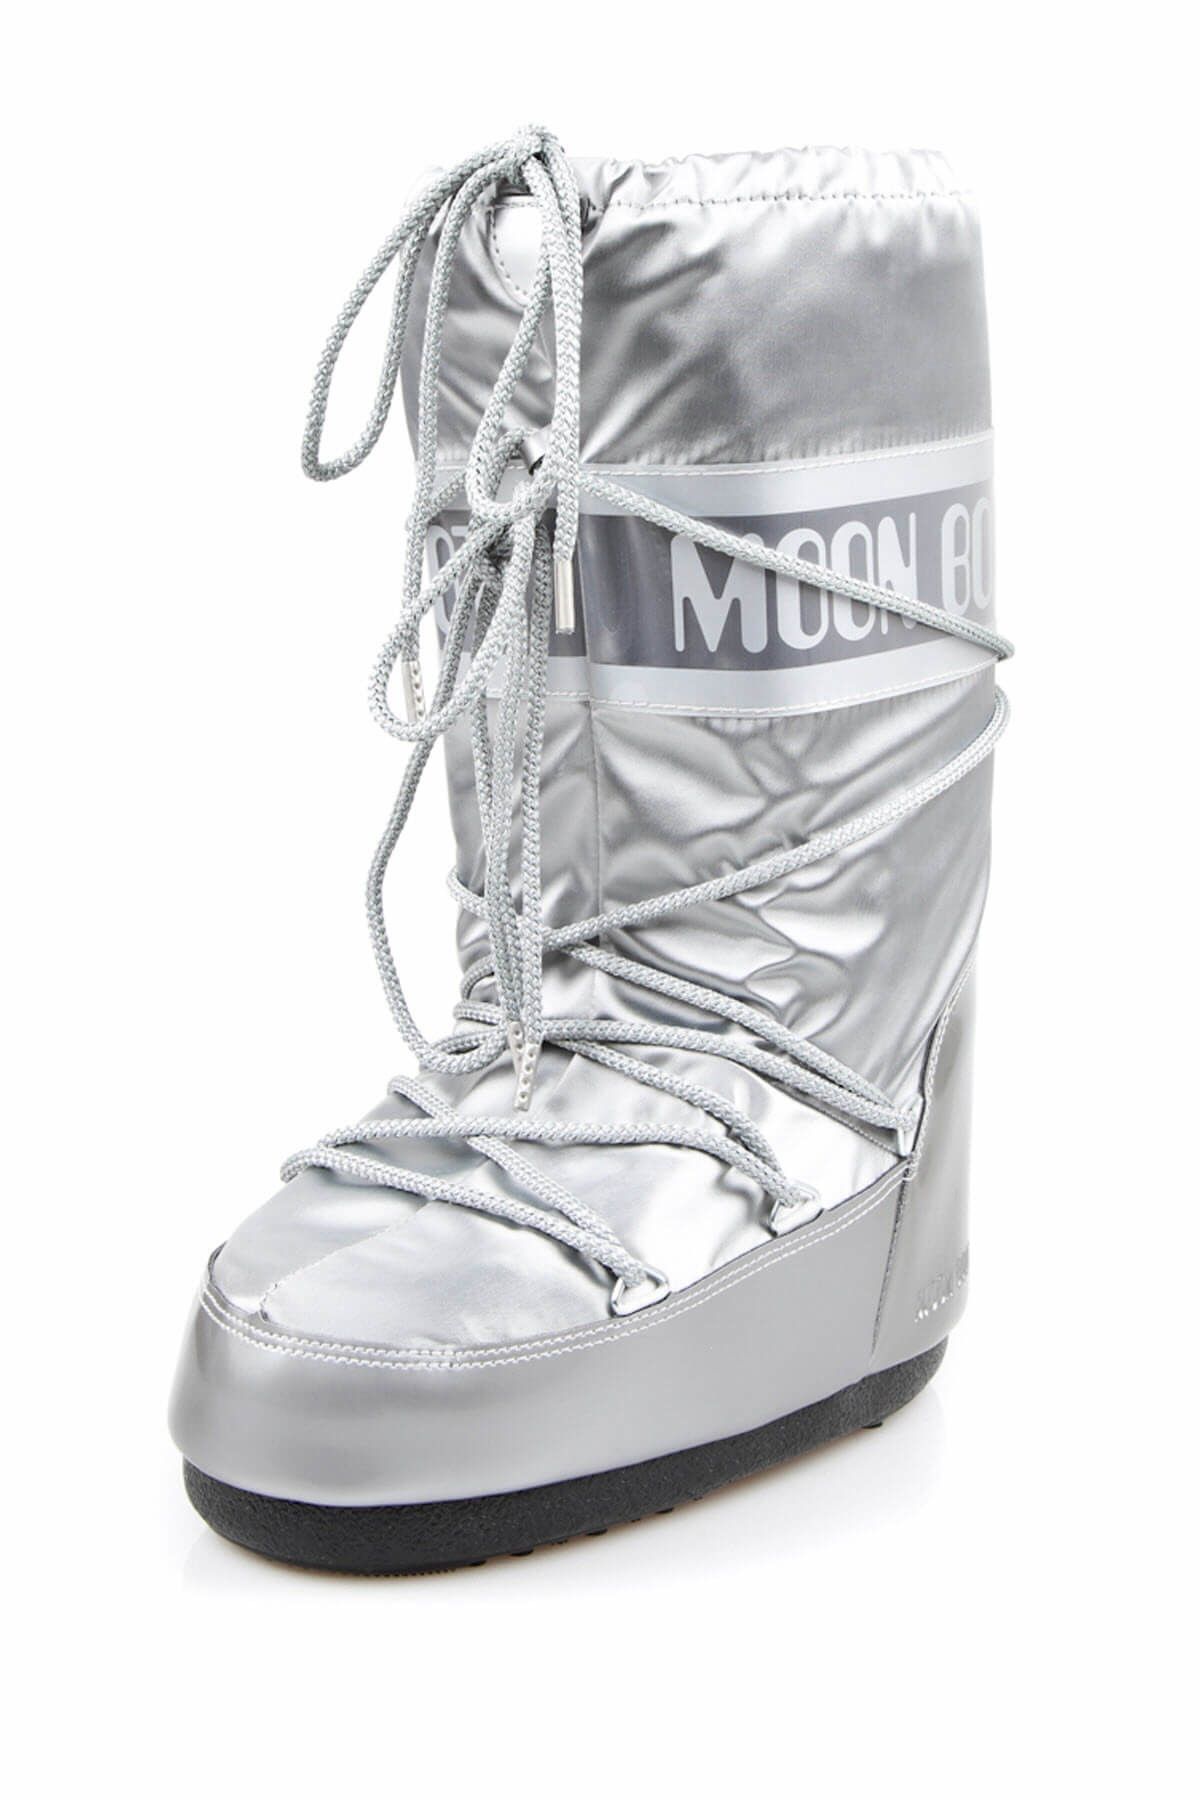 Moon Boot Gümüş Kadın Bot 2Monw2014003